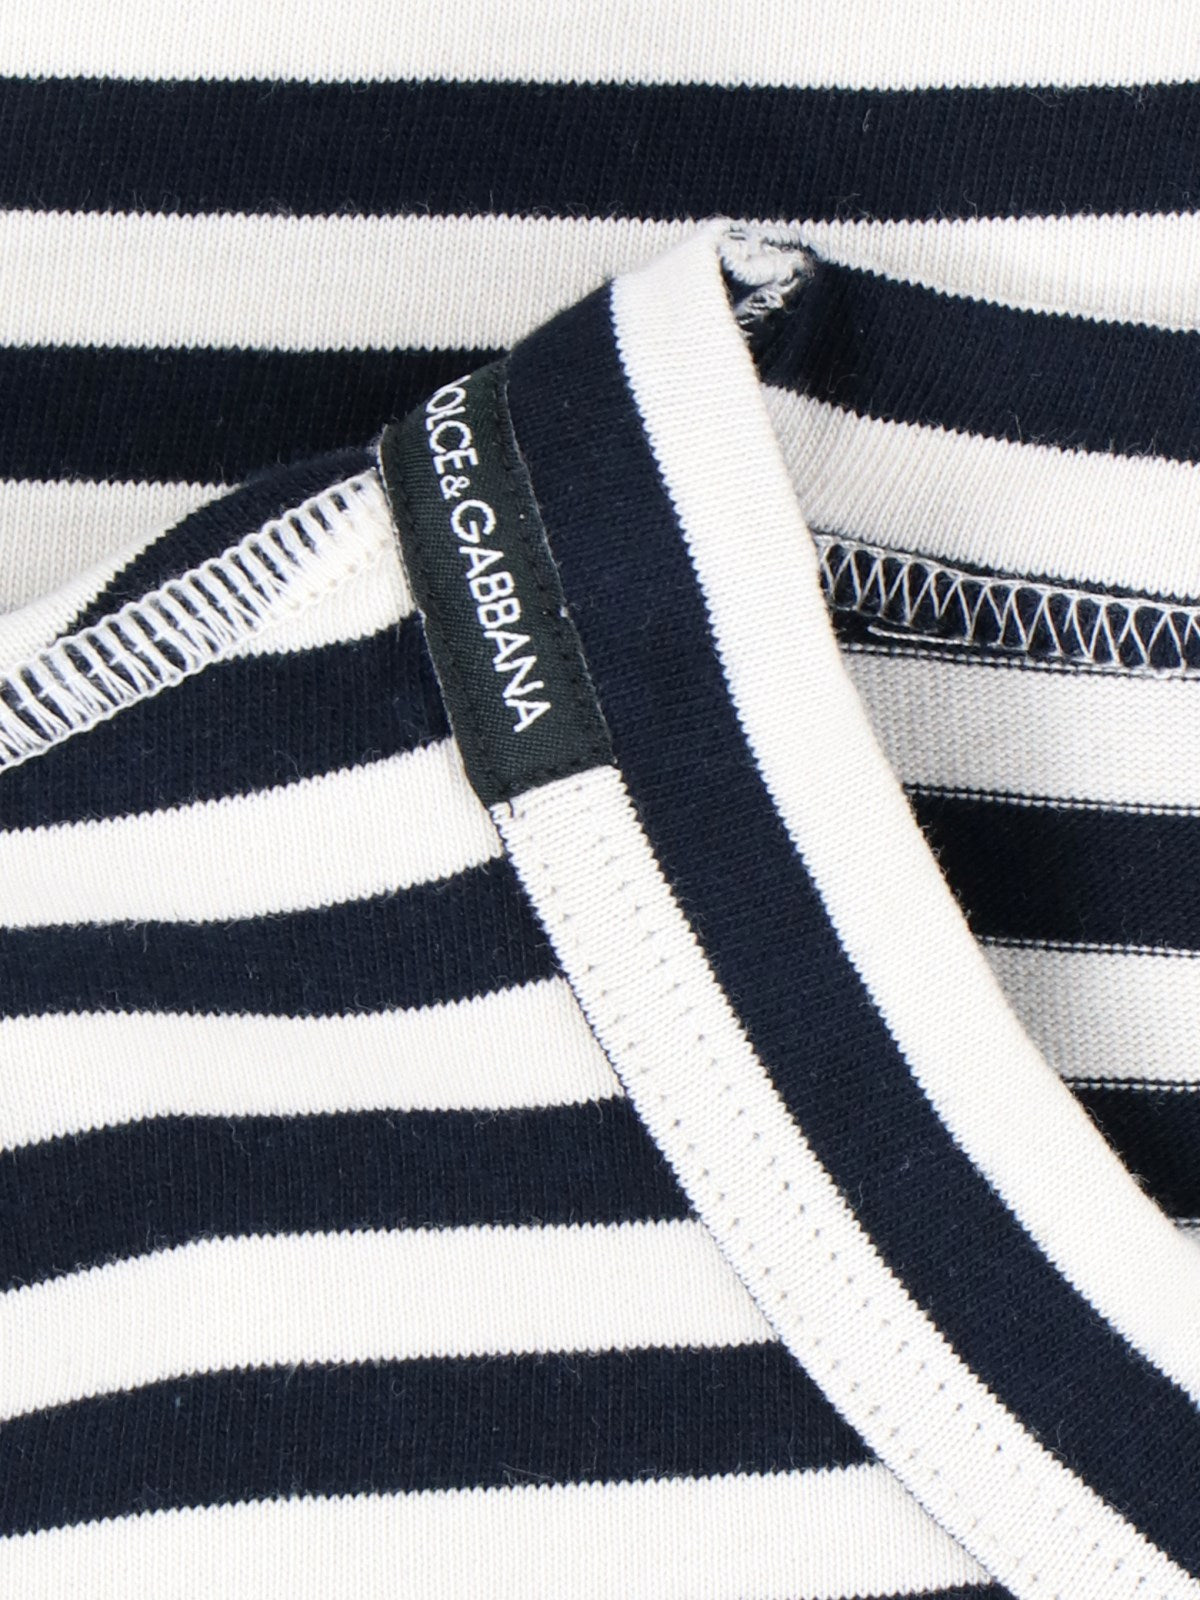 Dolce & Gabbana T-Shirt a righe logo-t-shirt-Dolce & Gabbana-T-shirt a righe logo Dolce & Gabbana, in cotone nero, pattern a righe con dettagli panna, girocollo, maniche corte, stampa logo bianco fronte, orlo dritto.-Dresso